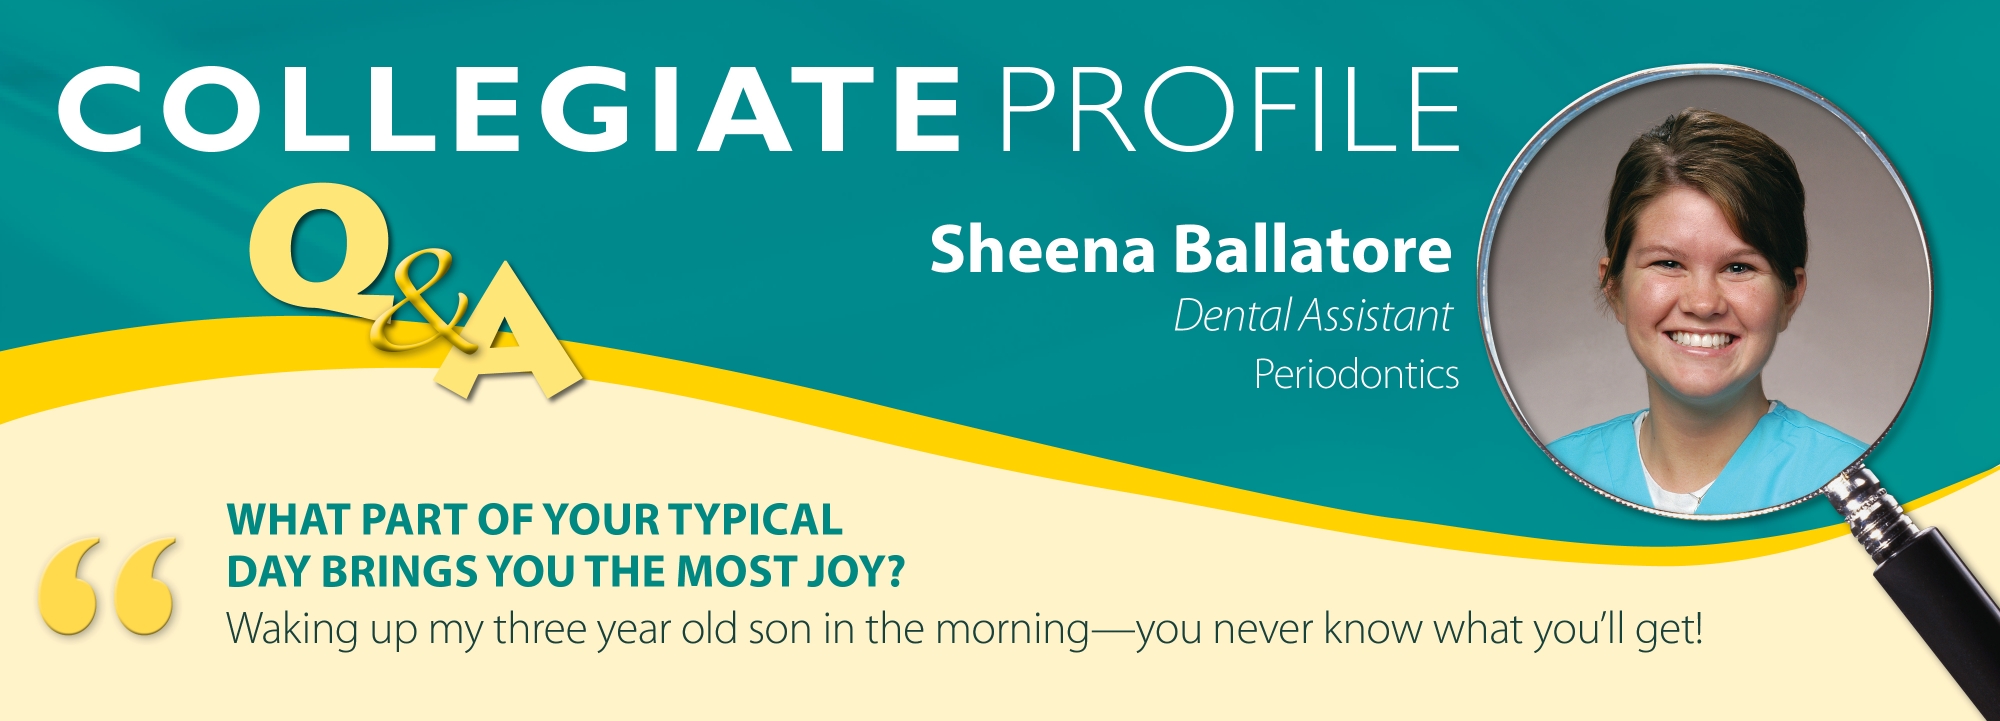 August Collegiate Profile Sheena Ballatore